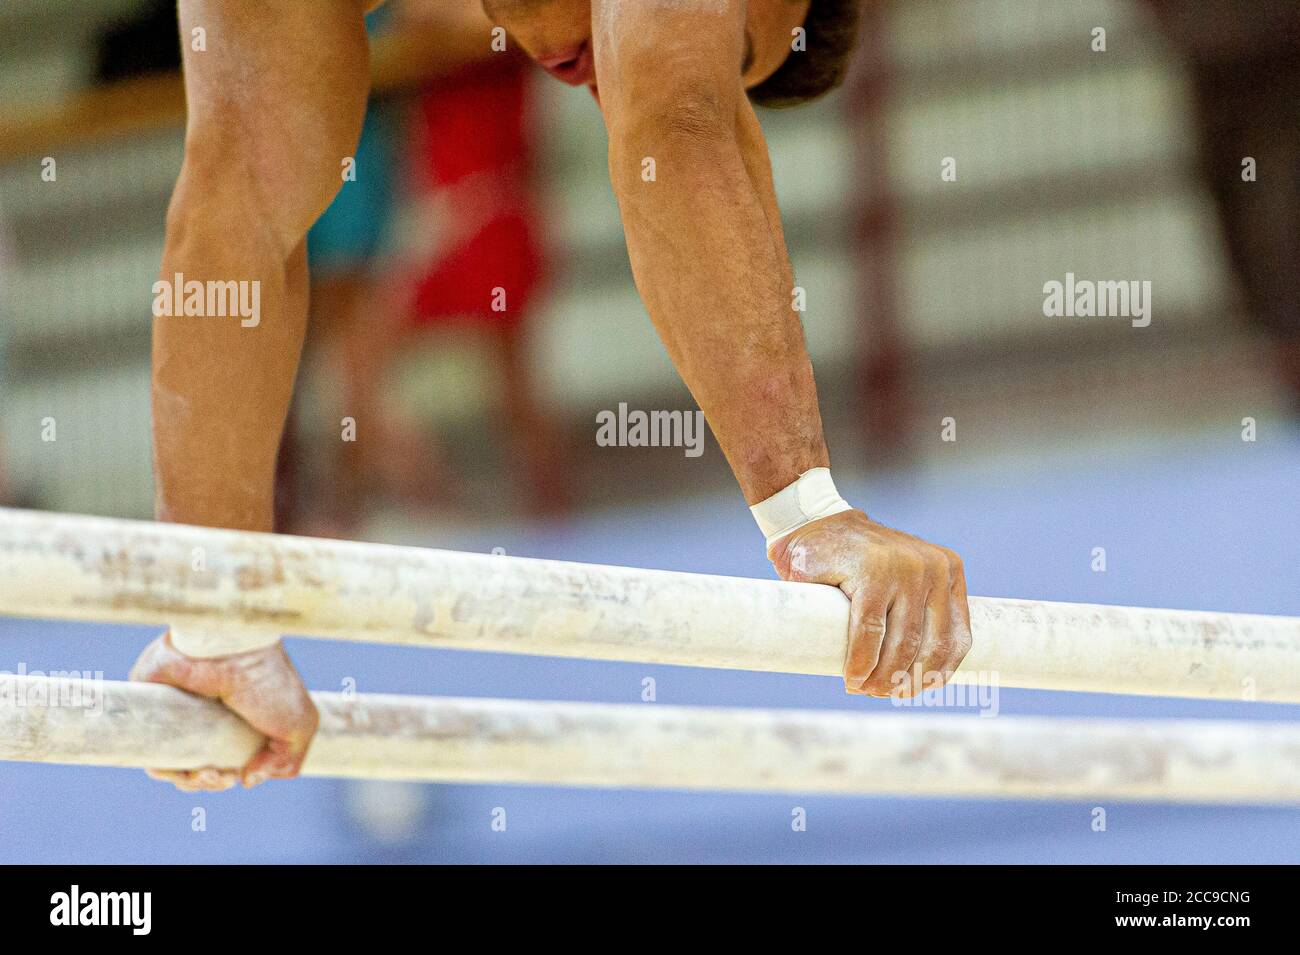 Gymnaste de l'équipe nationale française sur les barres parallèles, un des appareils de gymnastique artistique des hommes. Craie pour garder les mains au sec Banque D'Images